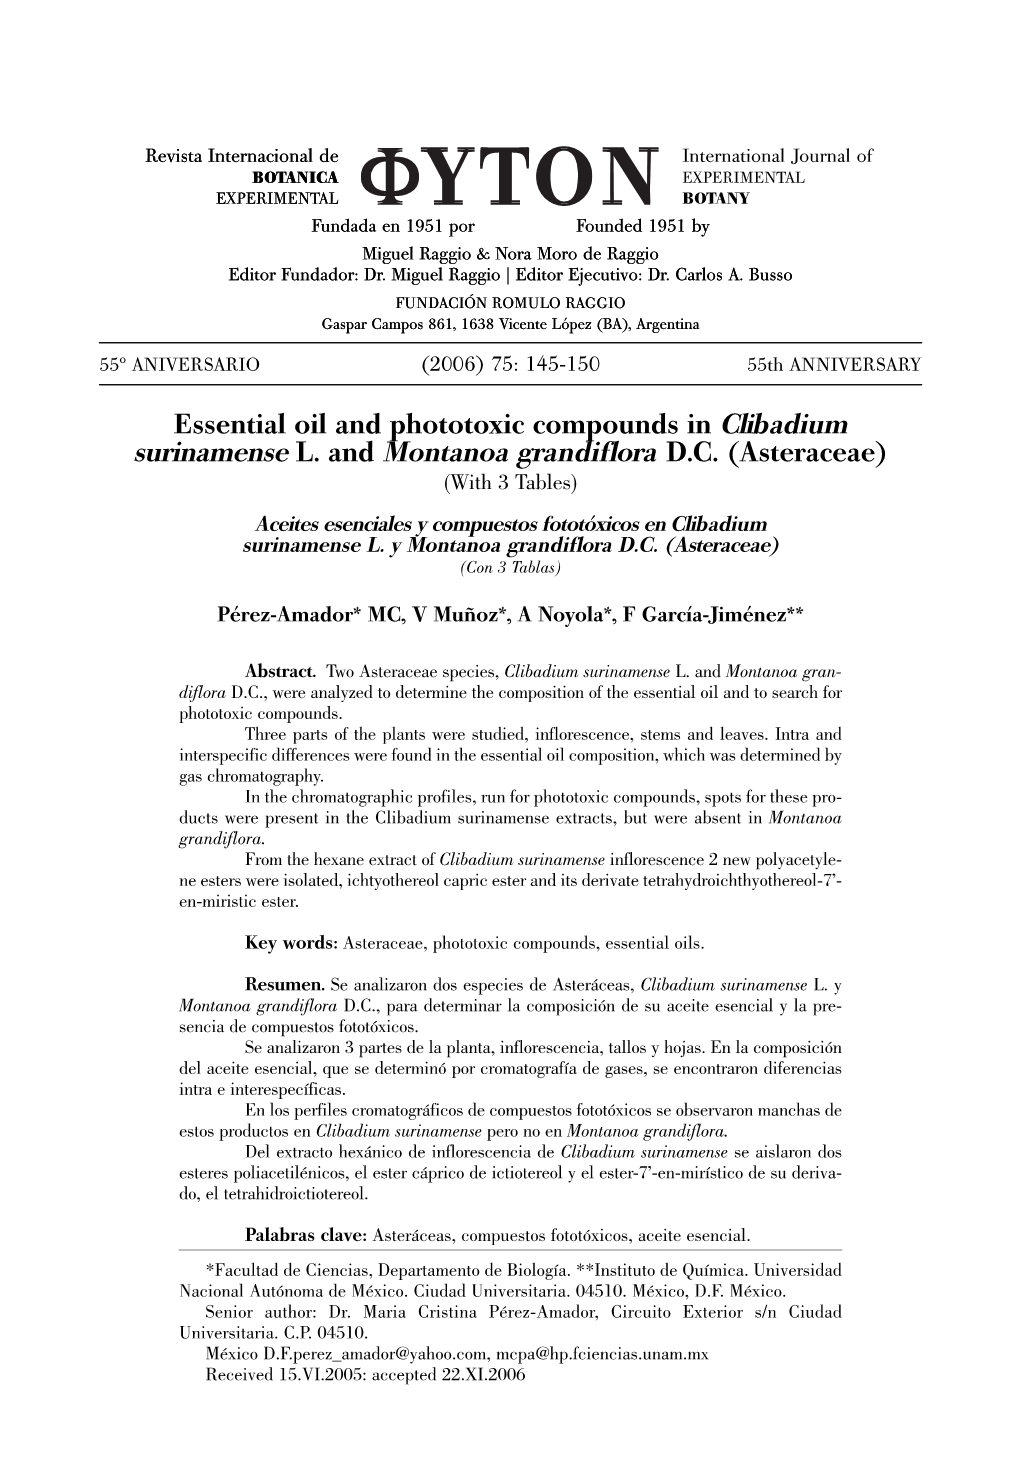 Essential Oil and Phototoxic Compounds in Clibadium Surinamense L